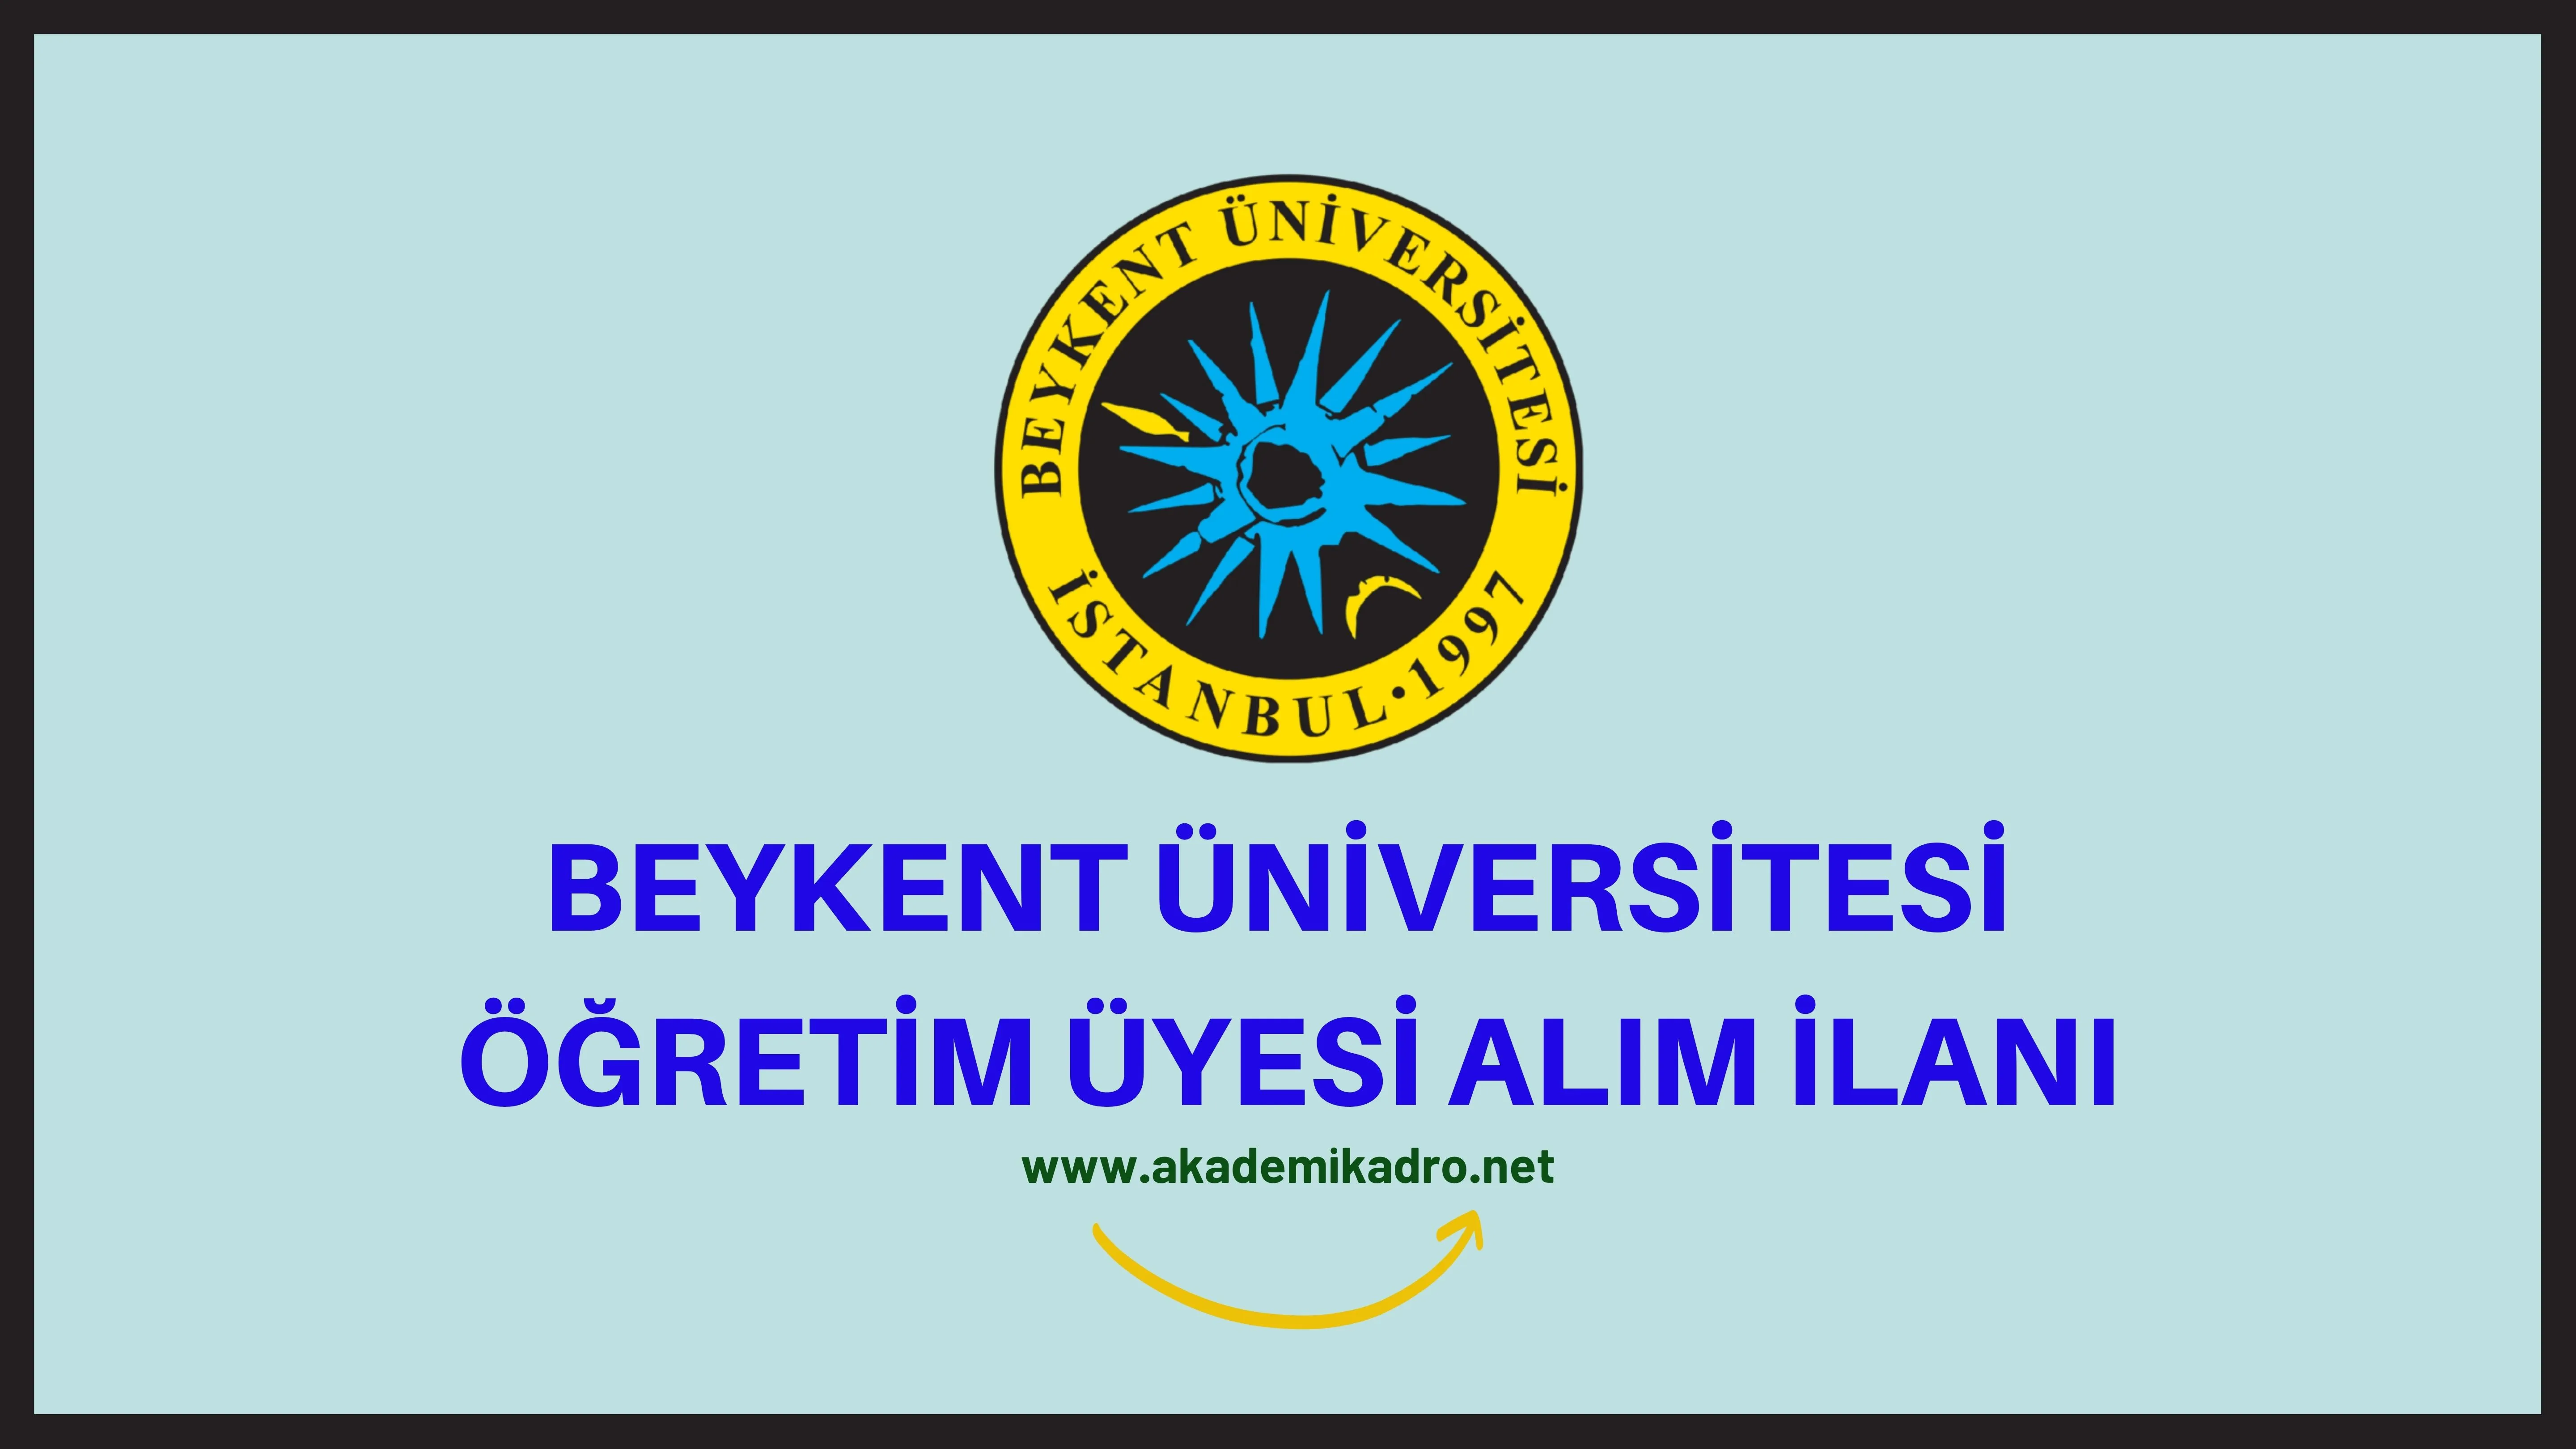 Beykent Üniversitesi akademik personel alacak.